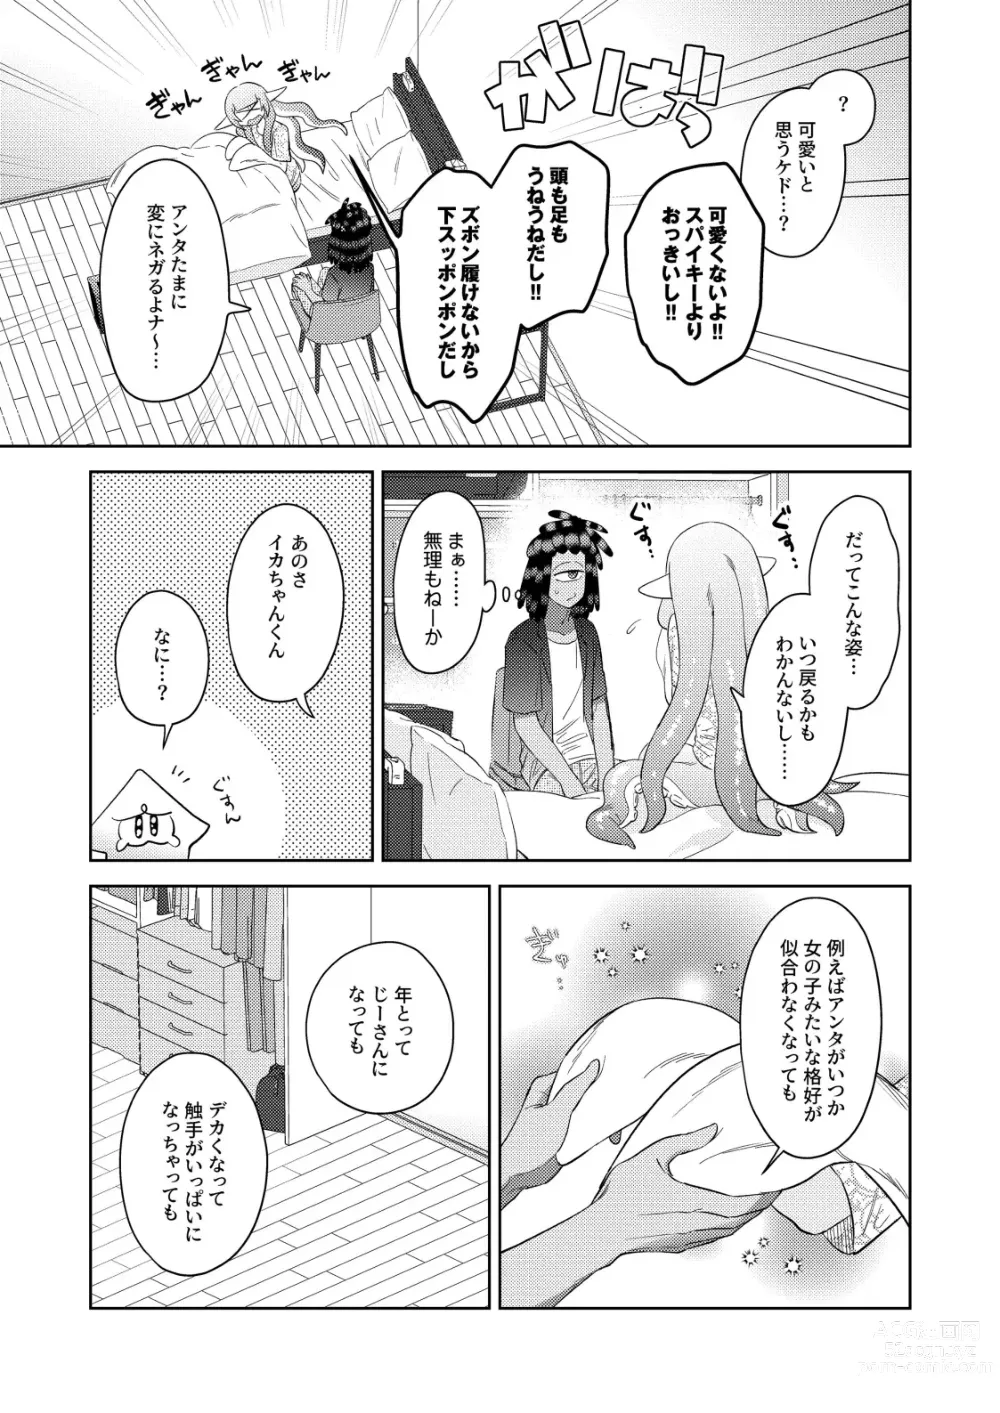 Page 6 of doujinshi Kawaihito